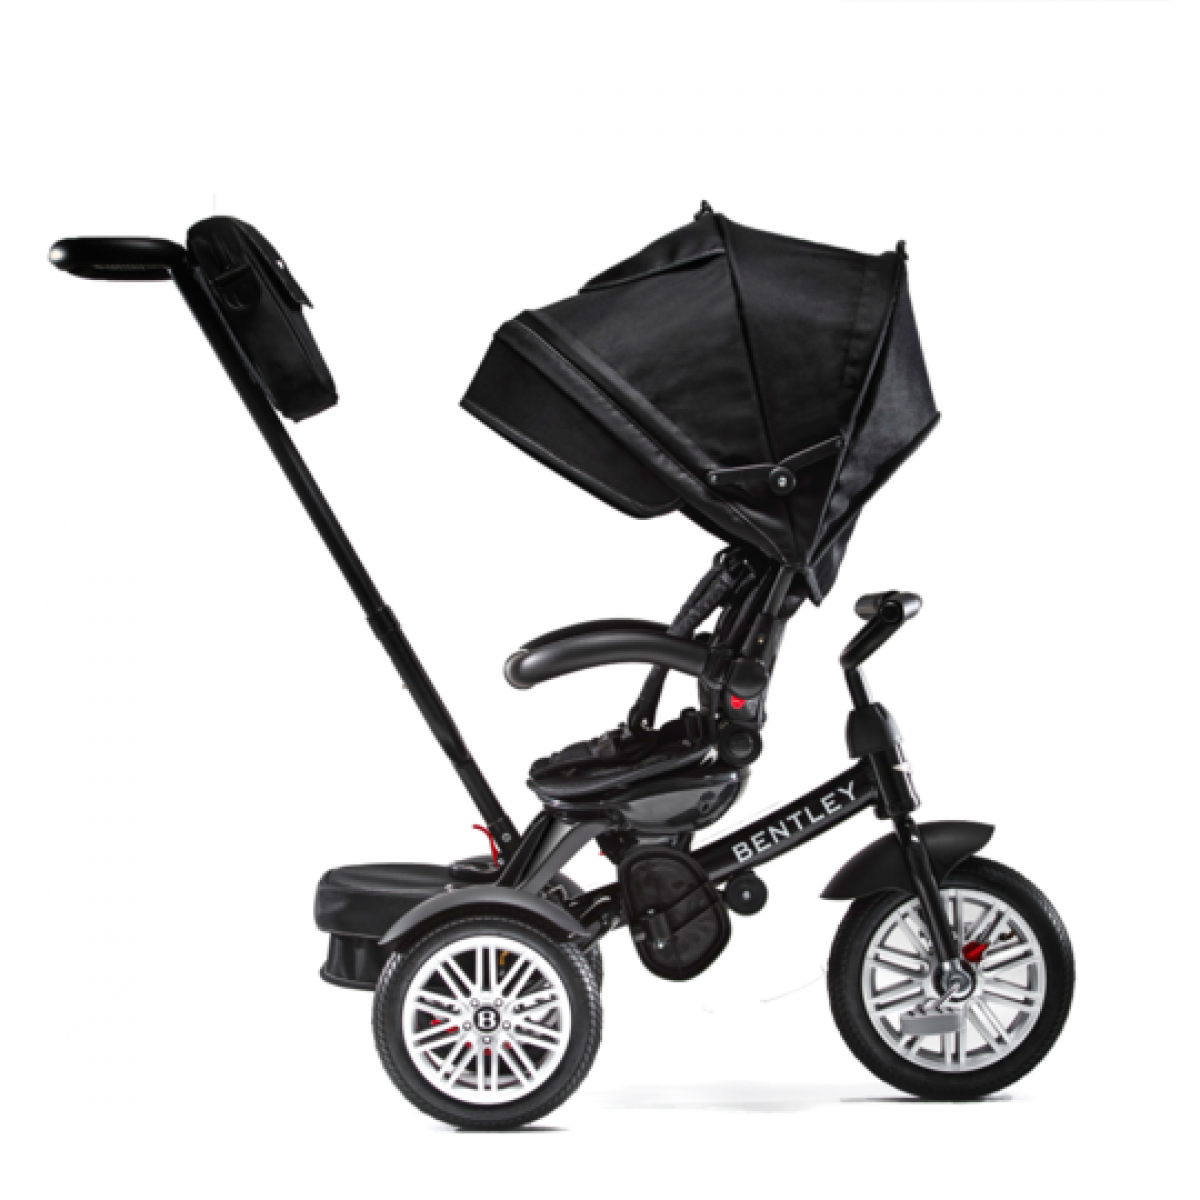 Onyx Black Trike Toddler Tricycle 6 in 1 Air Wheel Children Buggy Pram